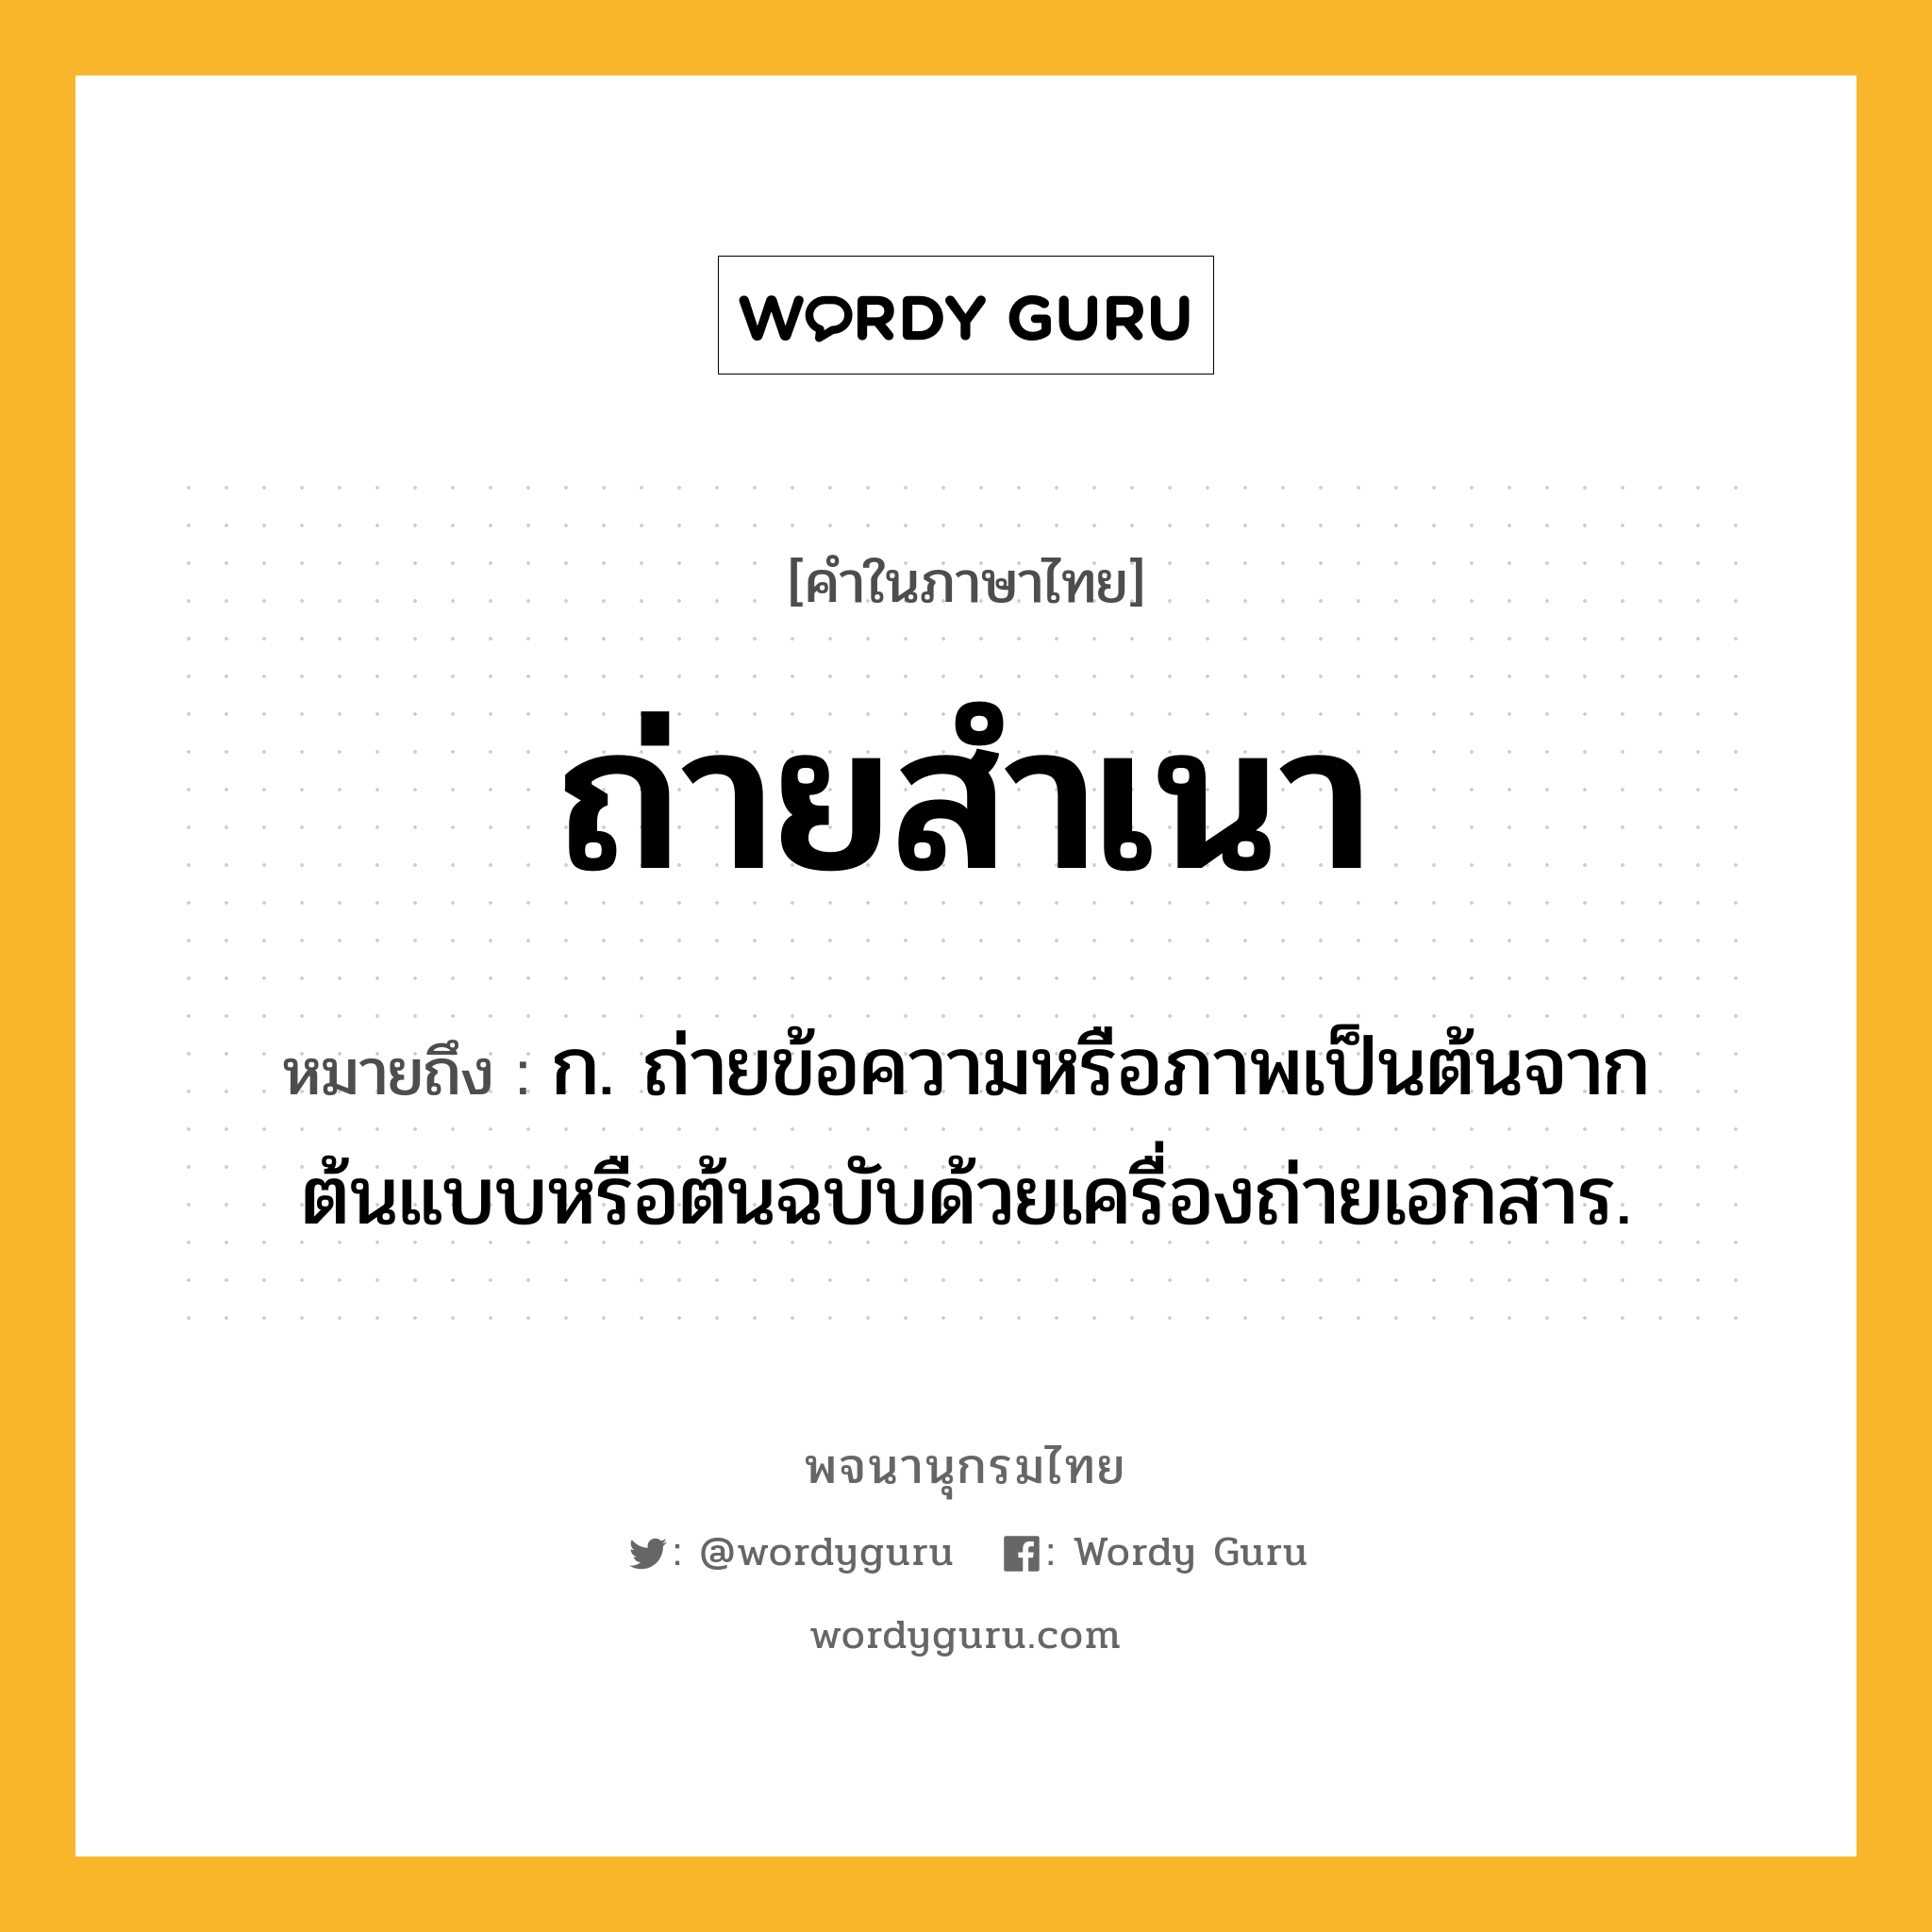 ถ่ายสำเนา หมายถึงอะไร?, คำในภาษาไทย ถ่ายสำเนา หมายถึง ก. ถ่ายข้อความหรือภาพเป็นต้นจากต้นแบบหรือต้นฉบับด้วยเครื่องถ่ายเอกสาร.